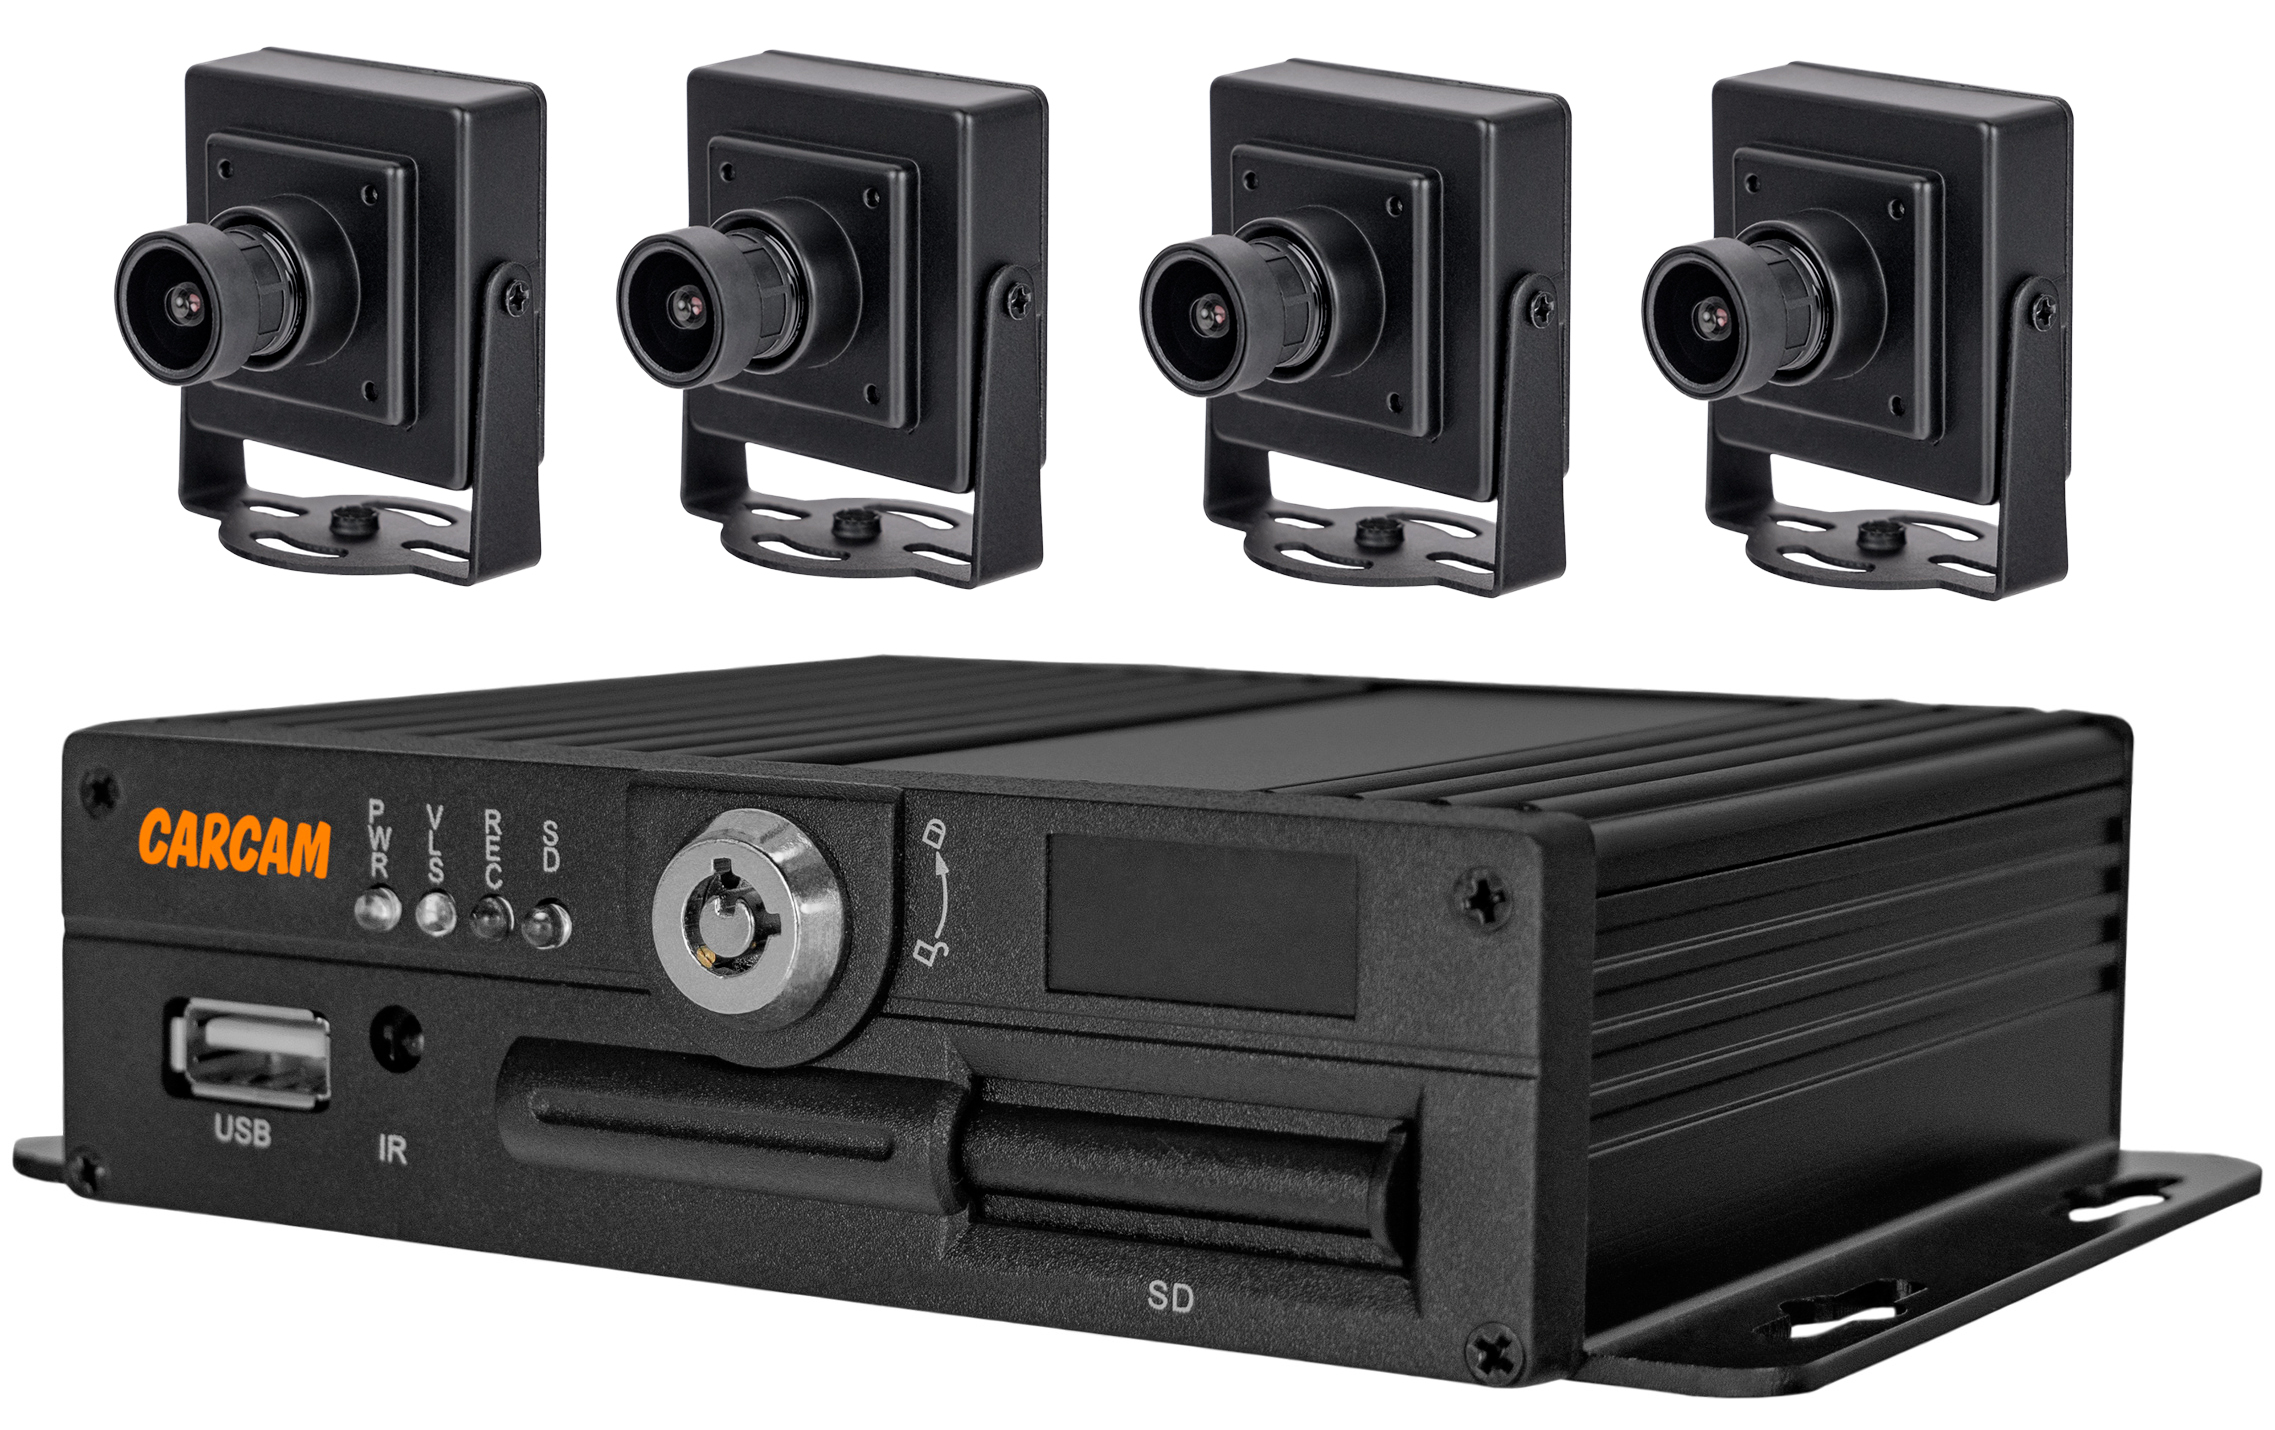 Комплект мониторинга транспорта CARCAM MVR KIT 4411/166X4 комплект видеонаблюдения carcam 4ch xvr kit 3004 2145x2